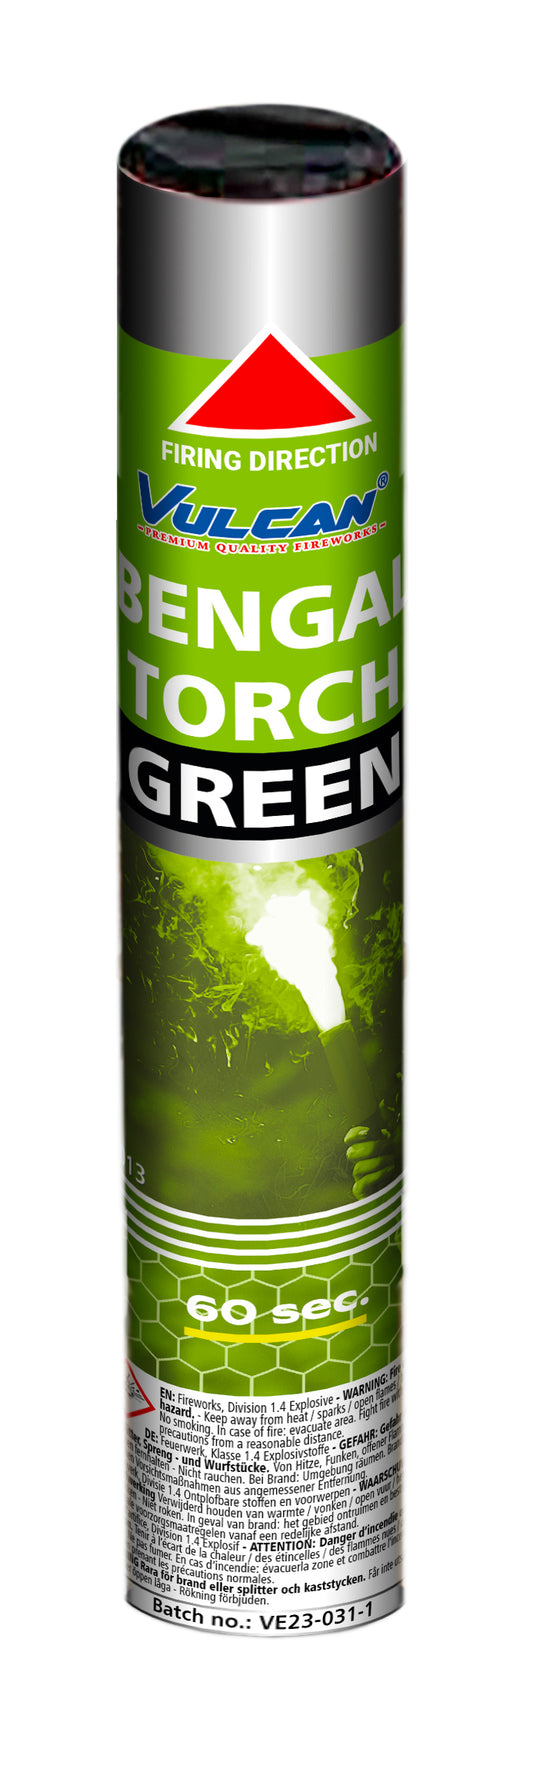 Bengal Torch Groen